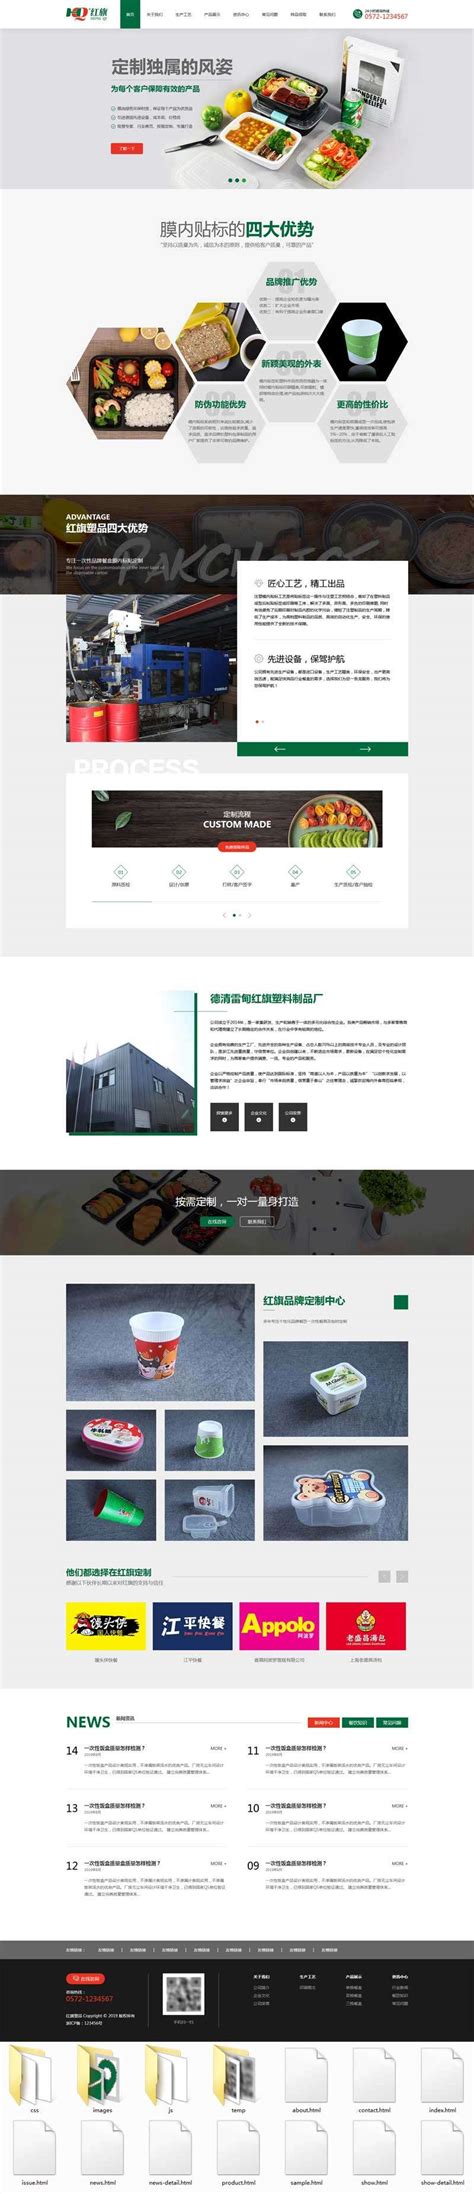 绿色环保的样品包装设计公司网站模板